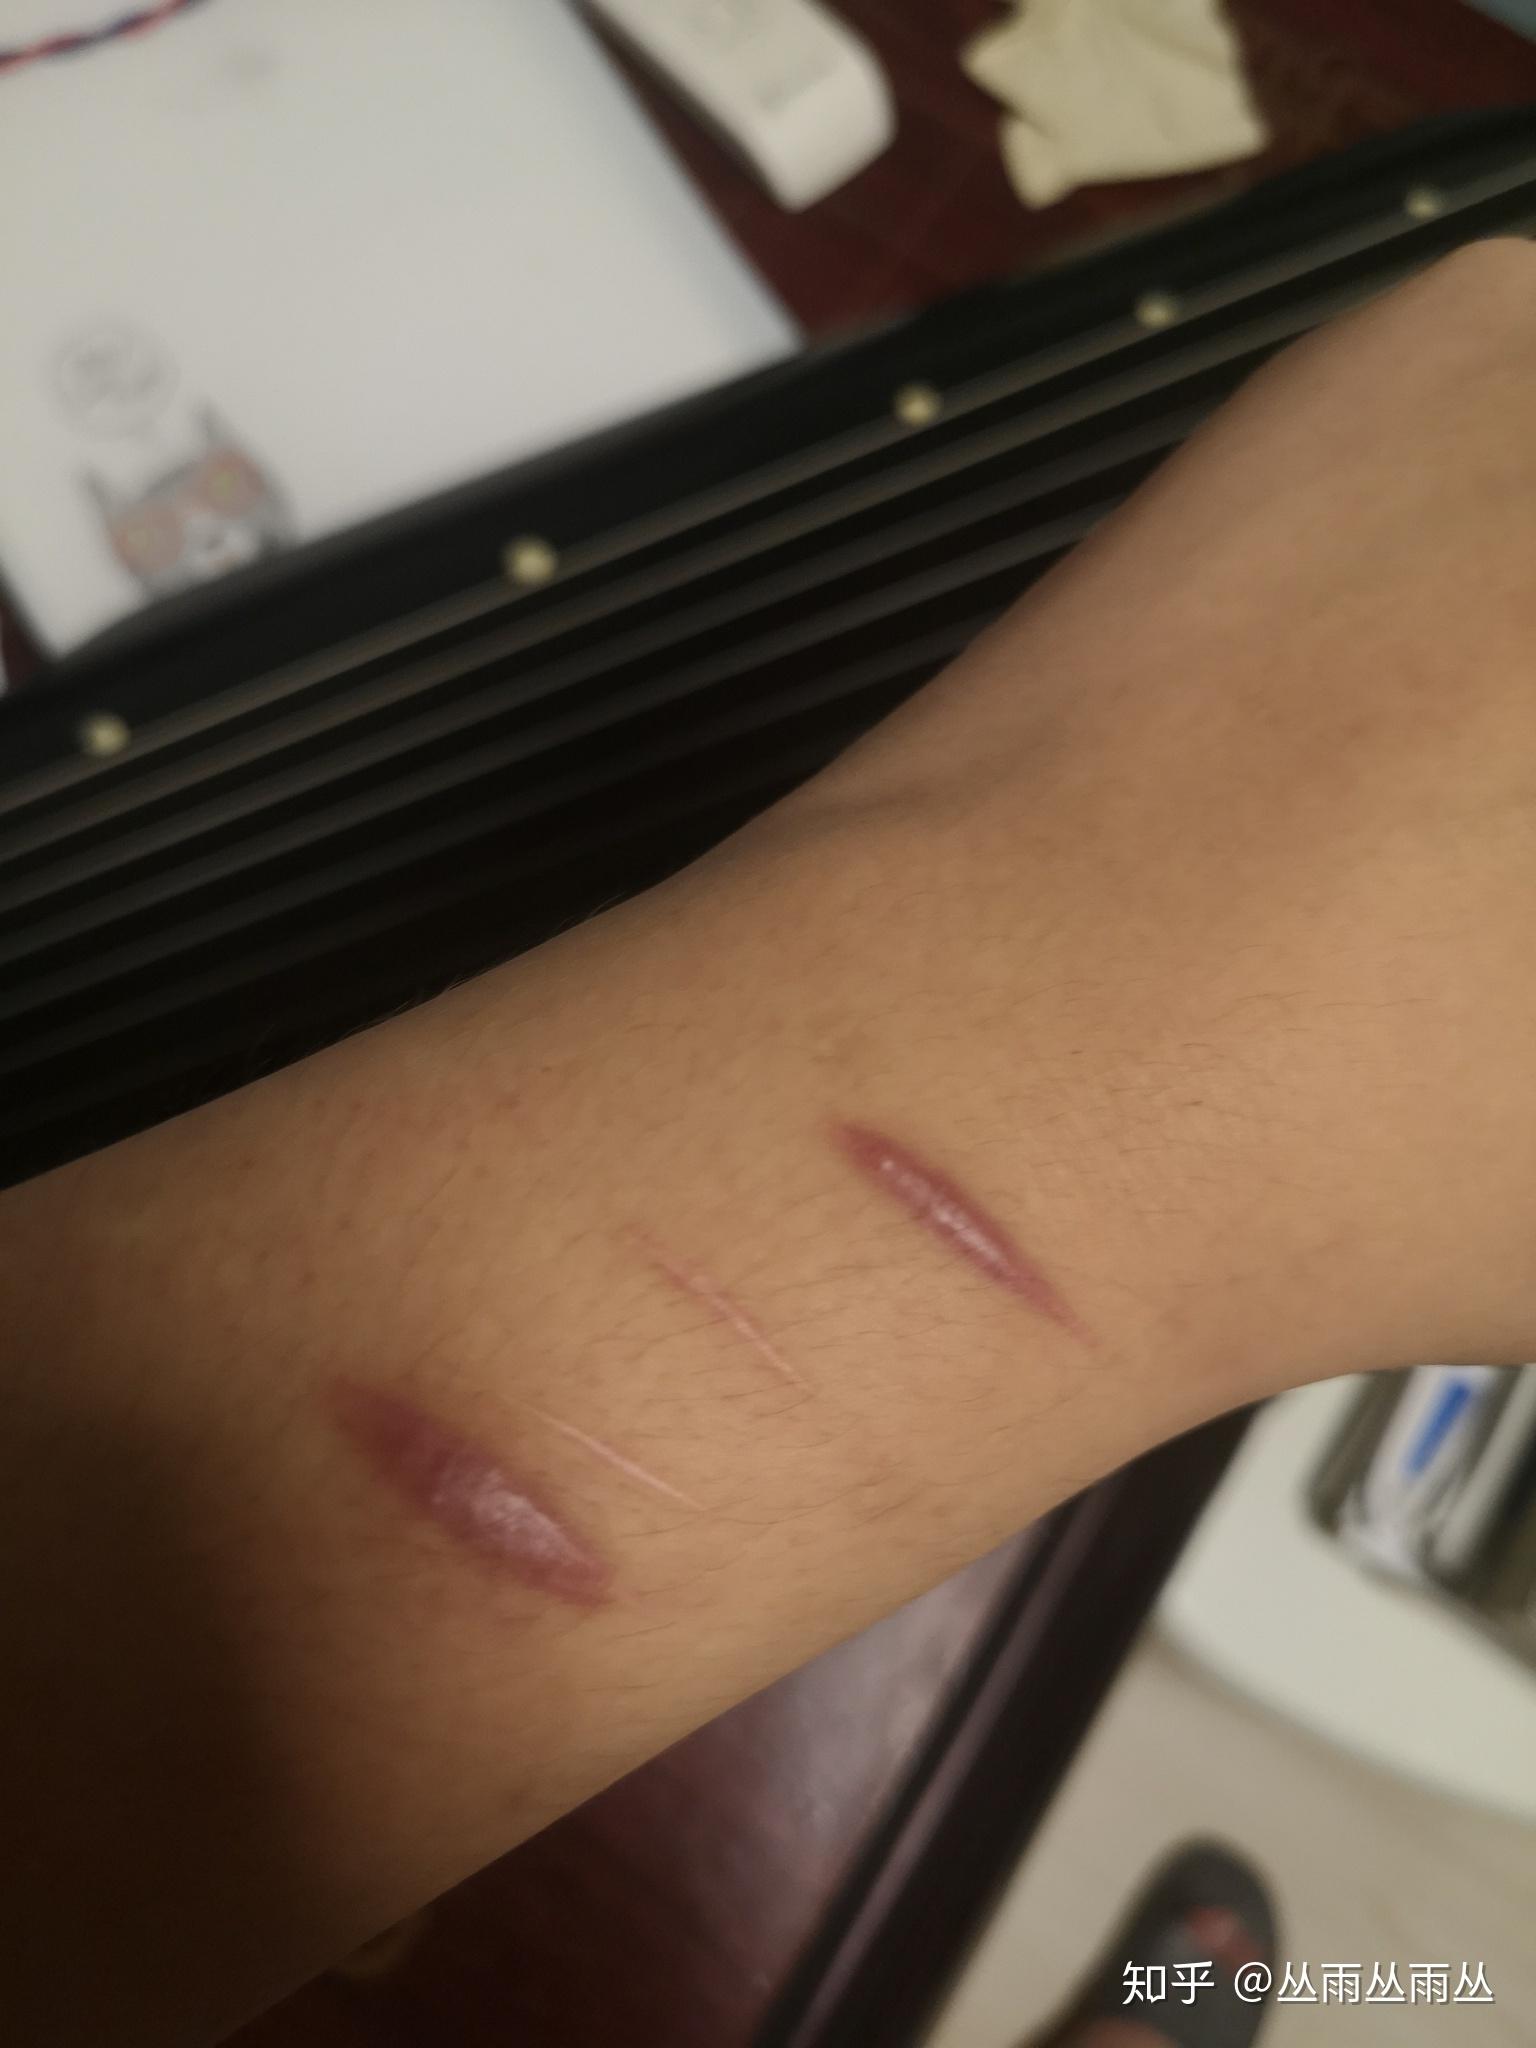 对于一个割腕过的人,未来如何向别人解释这道疤的由来? 